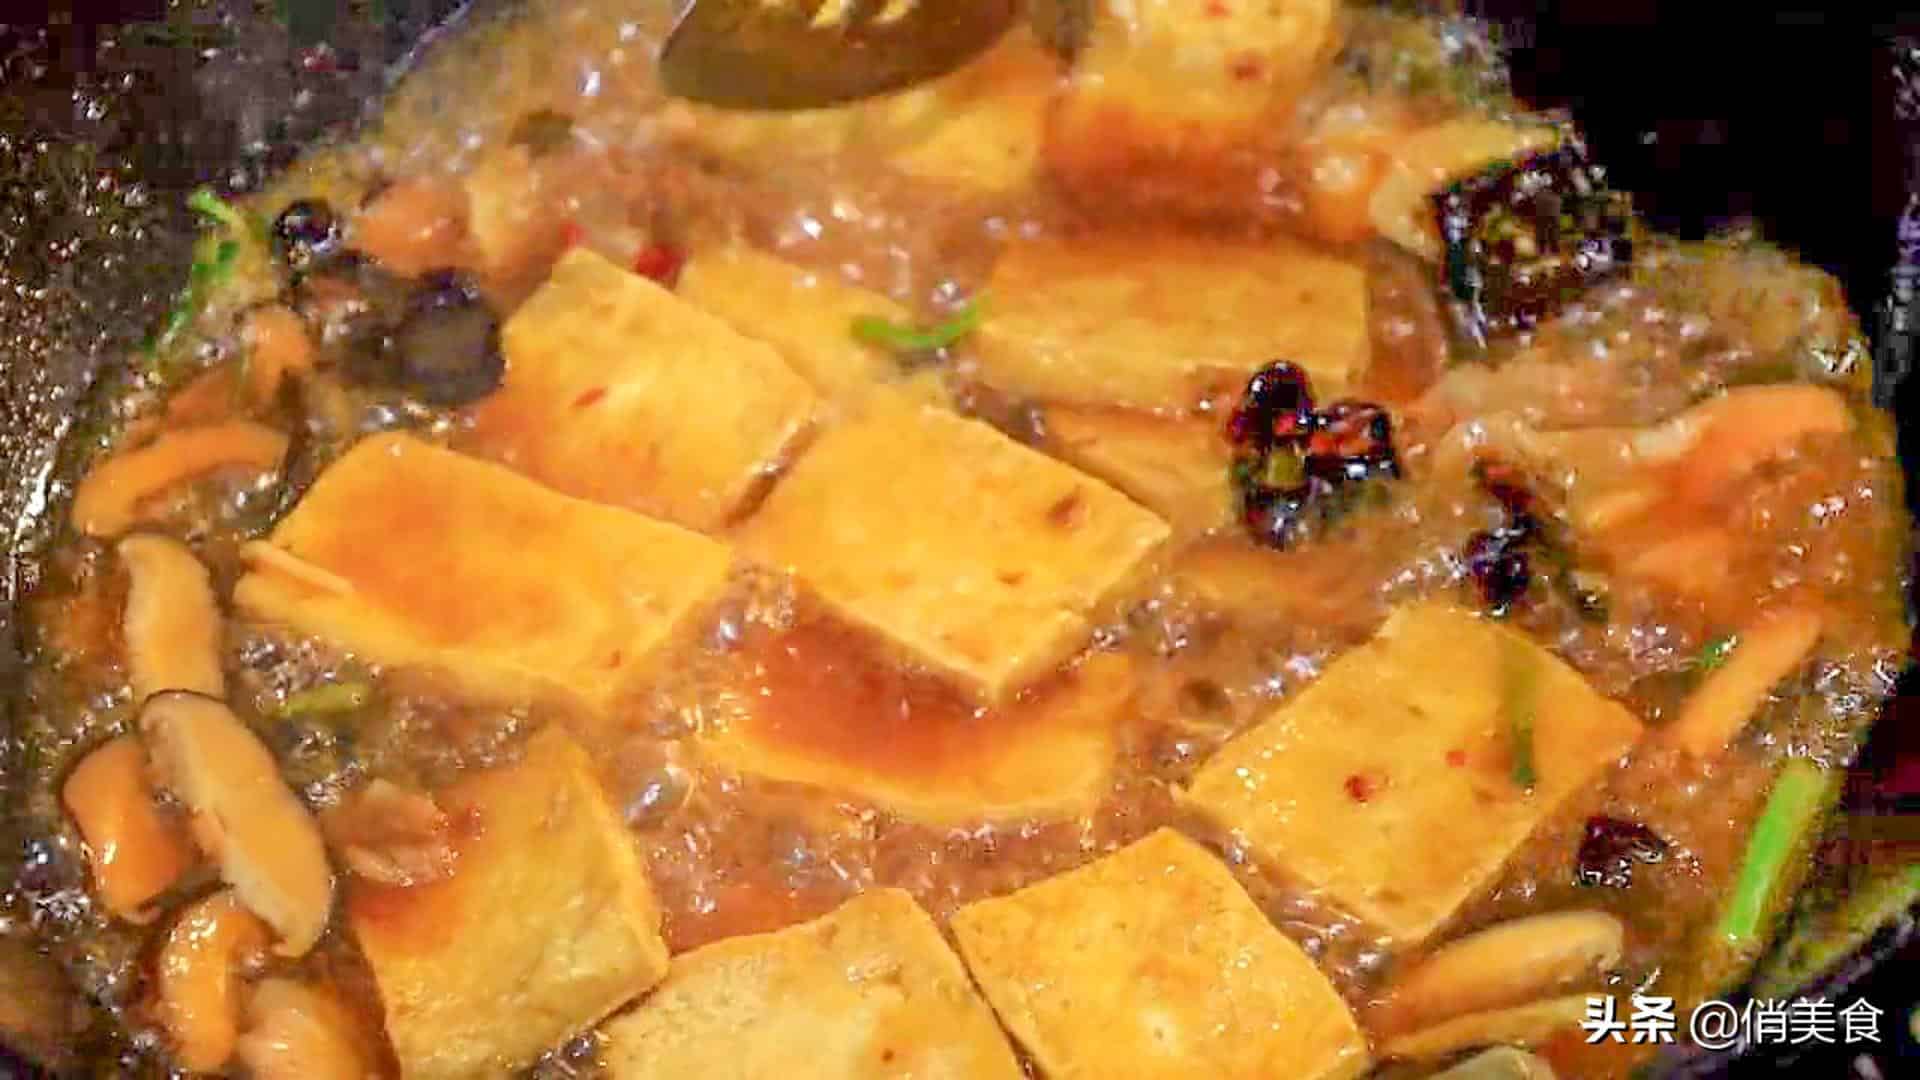 豆腐的做法大全家常(15种简单好吃家常嫩豆腐红烧,焖鸡蛋制作方法） 65